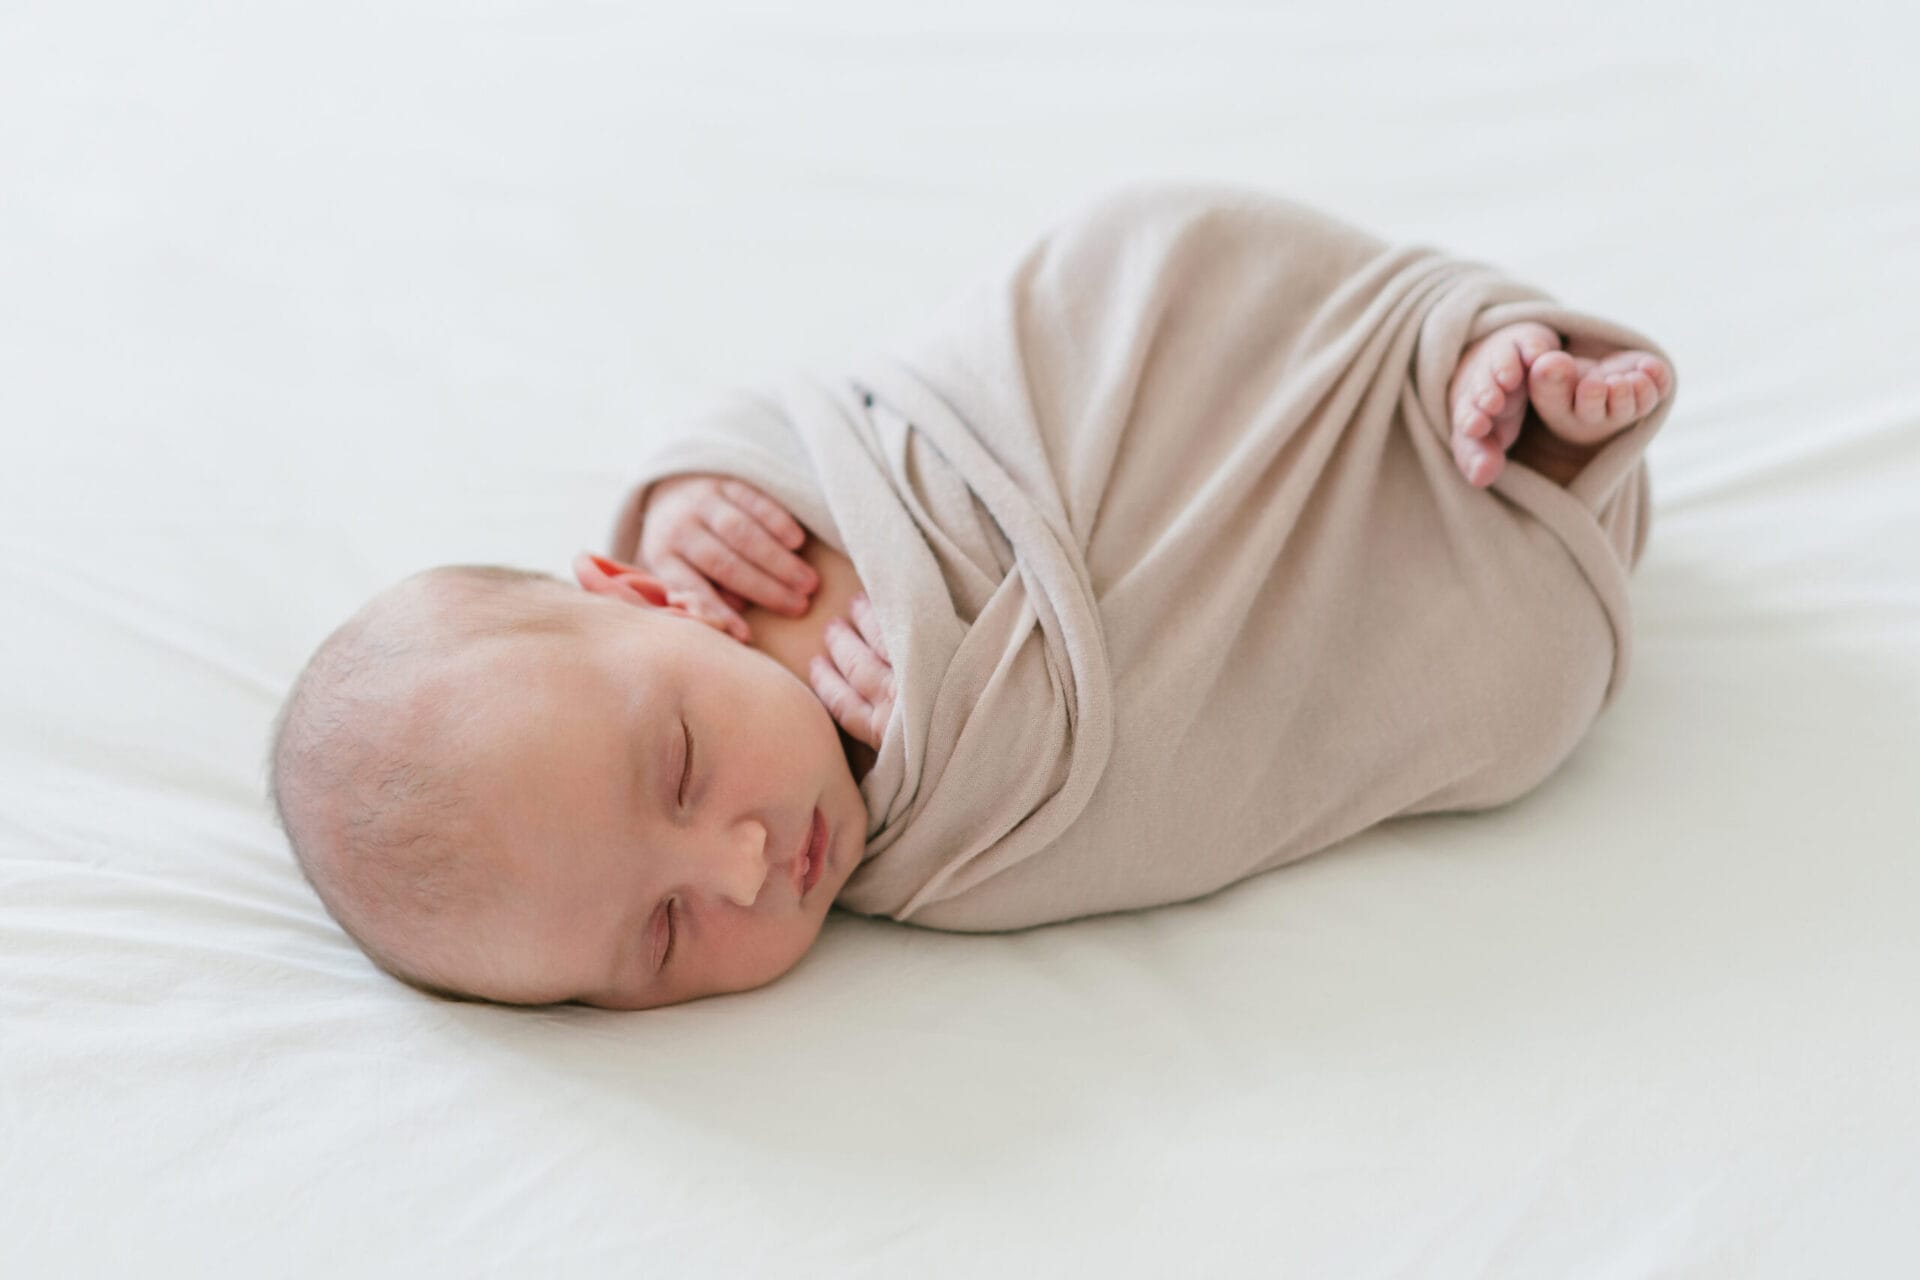 Entspannte Neugeborenenfotos in den eigenen 4 Wänden, neugeborenenfotos, entspannte neugeborenenfotos